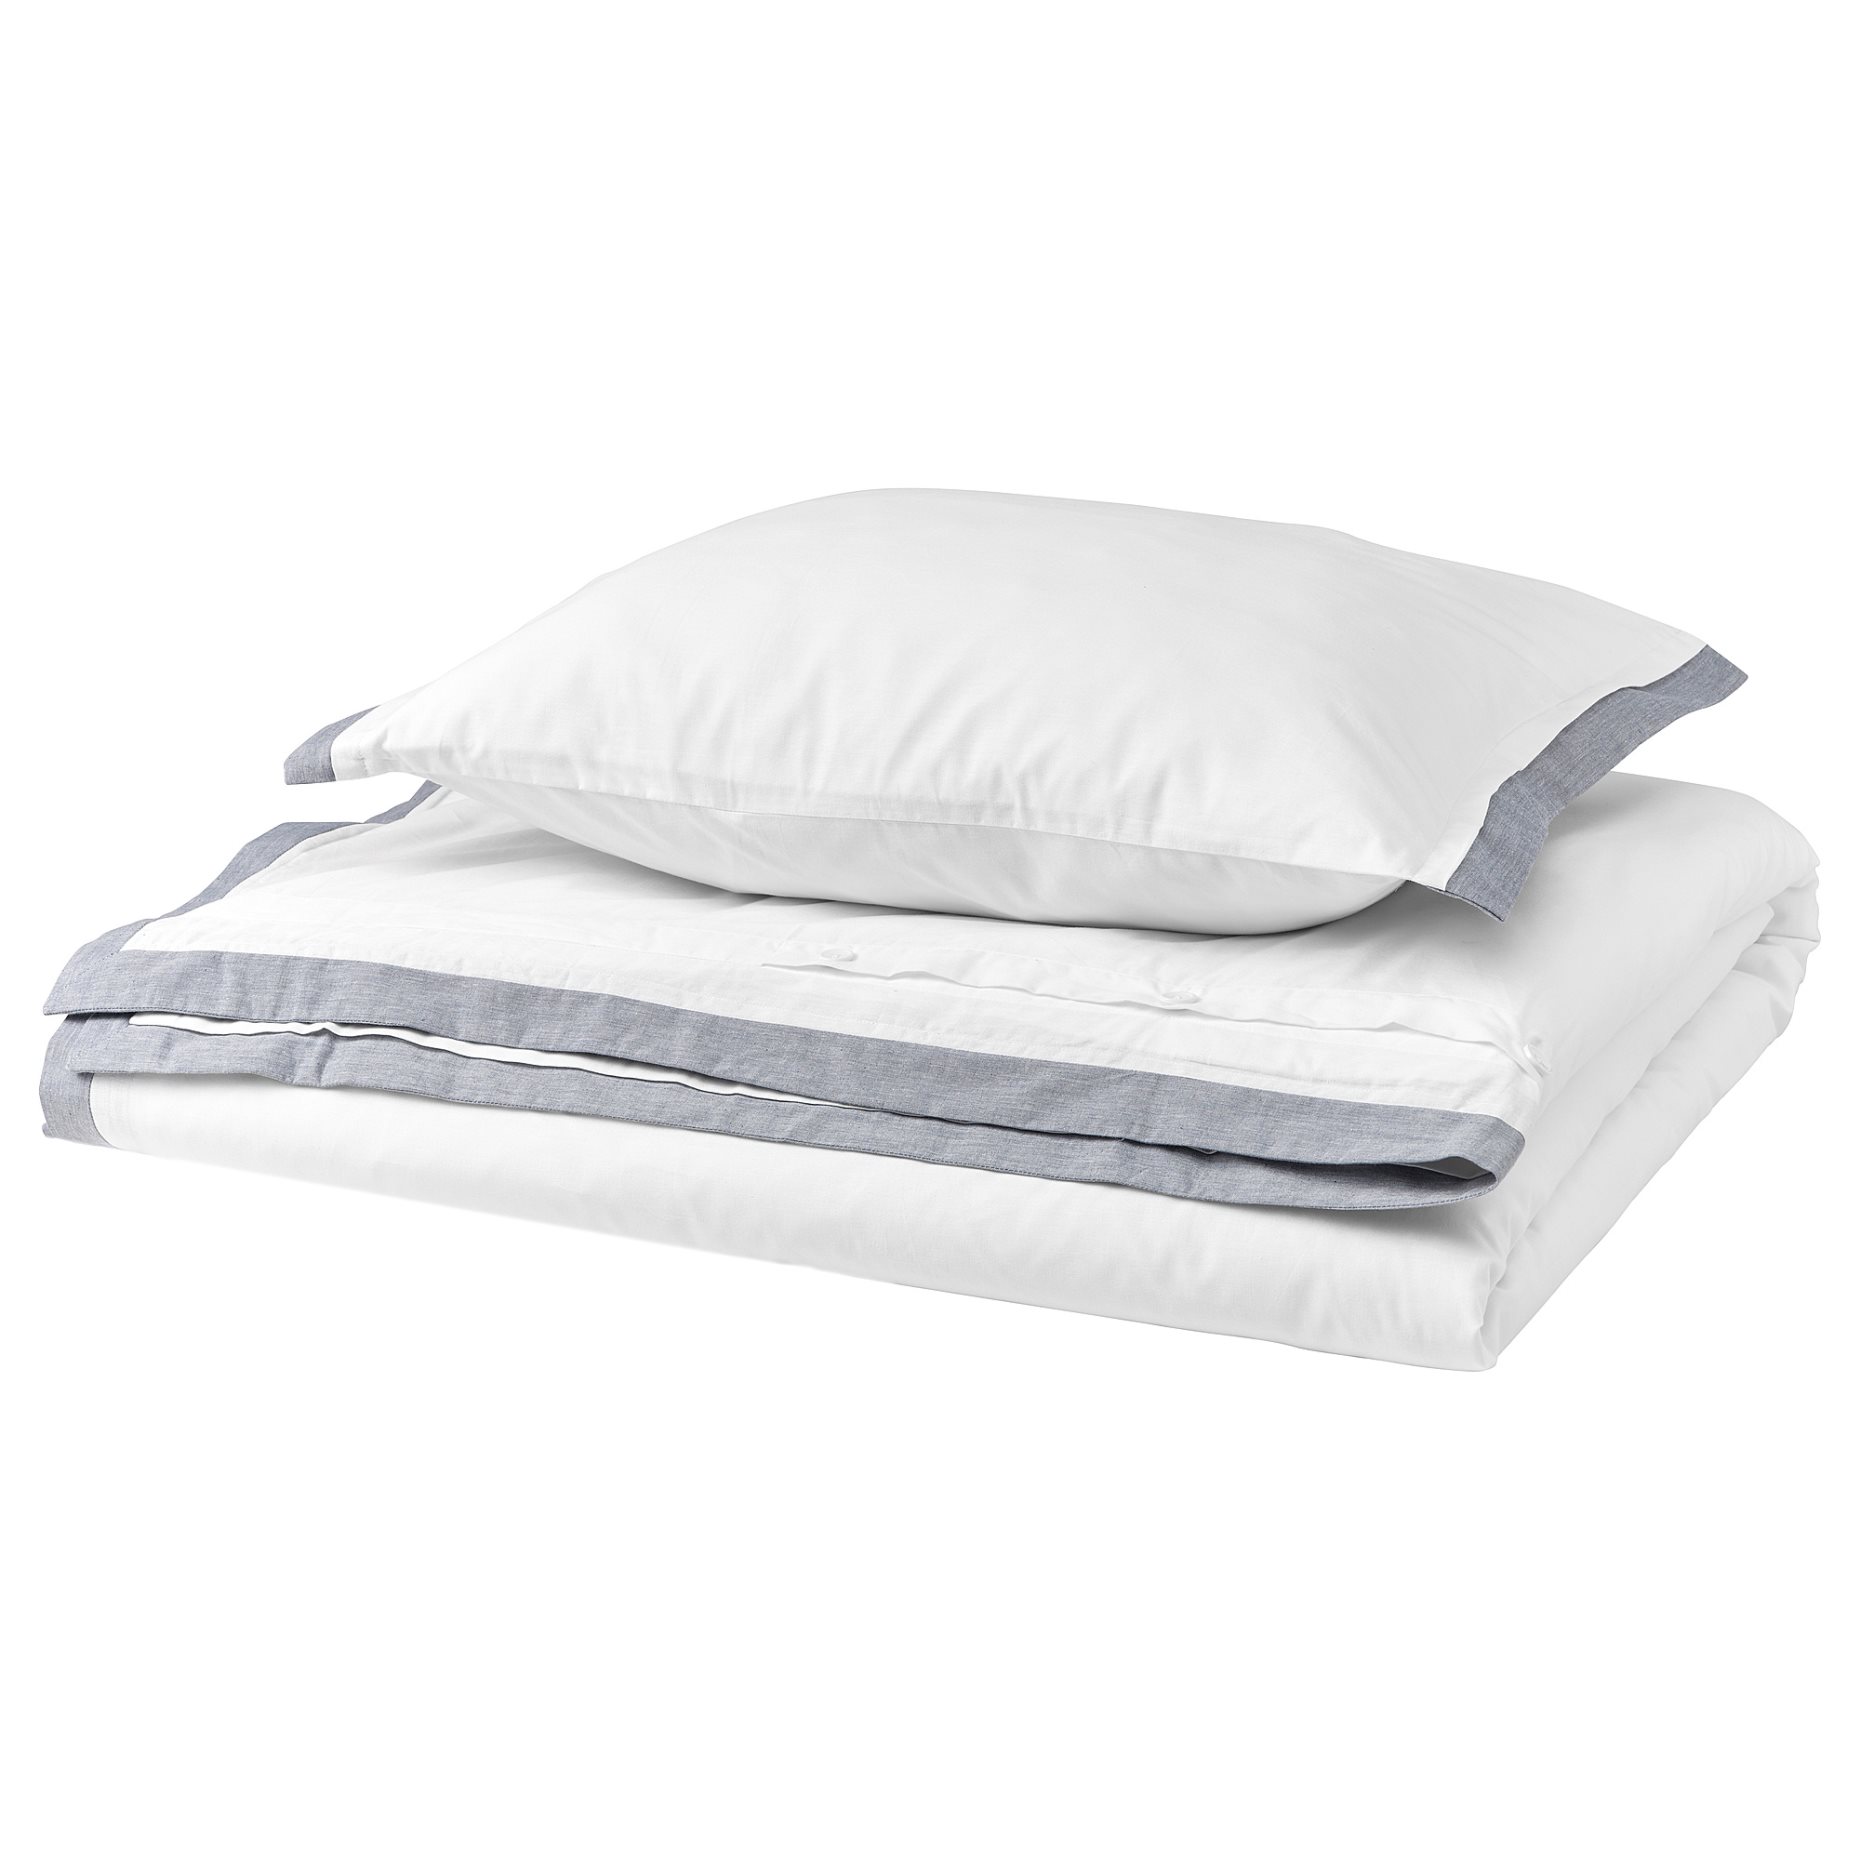 TÅTELSMYGARE, duvet cover and pillowcase, 150x200/50x60 cm, 605.547.85